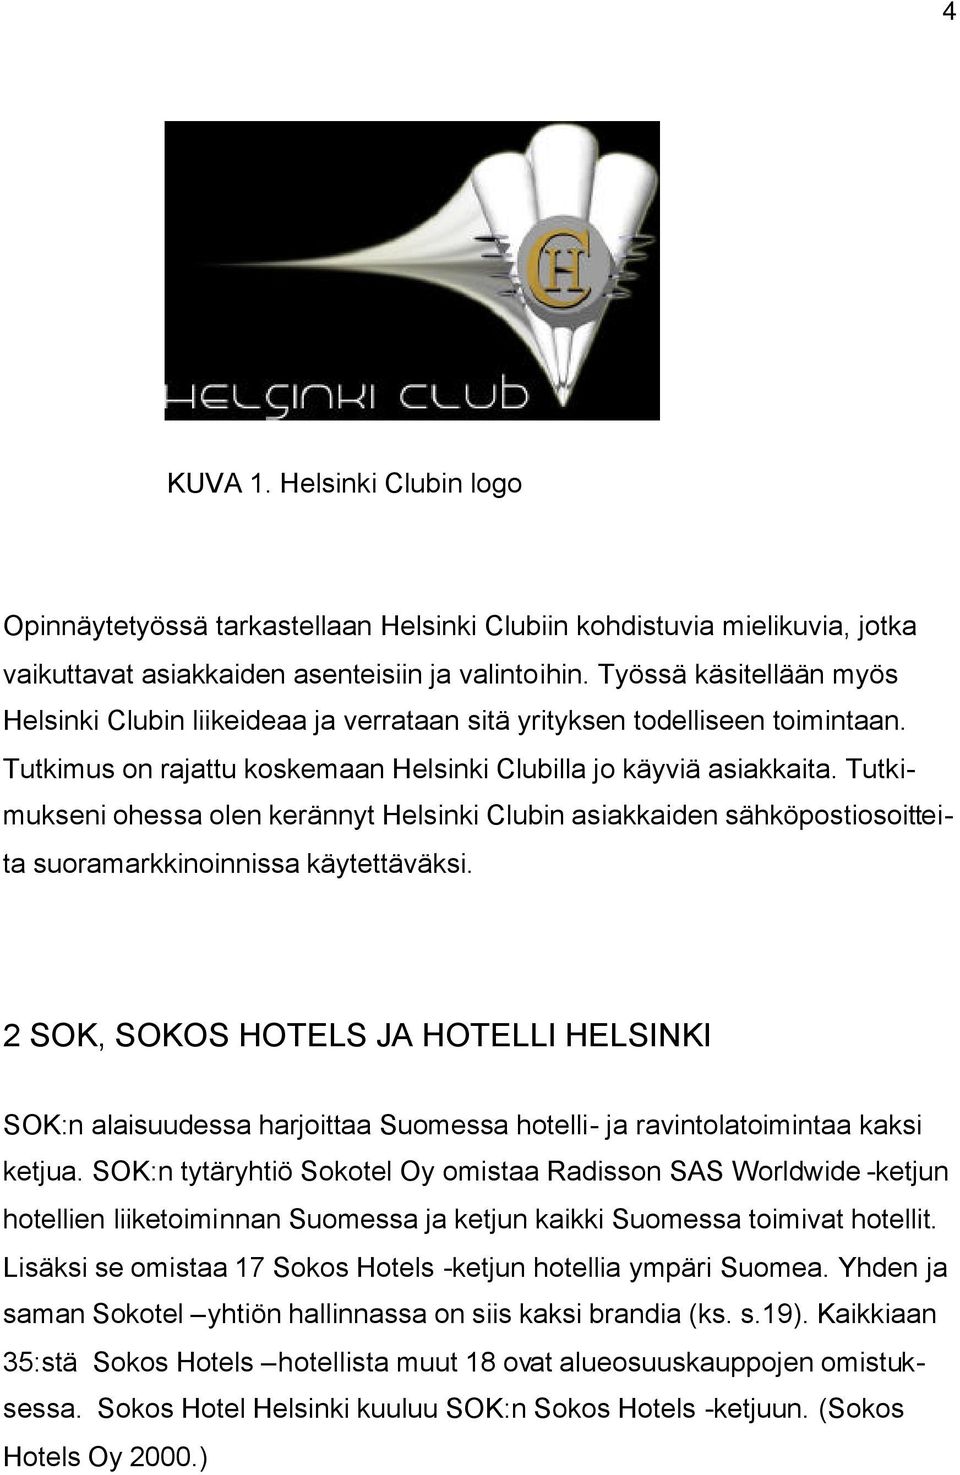 Tutkimukseni ohessa olen kerännyt Helsinki Clubin asiakkaiden sähköpostiosoitteita suoramarkkinoinnissa käytettäväksi.